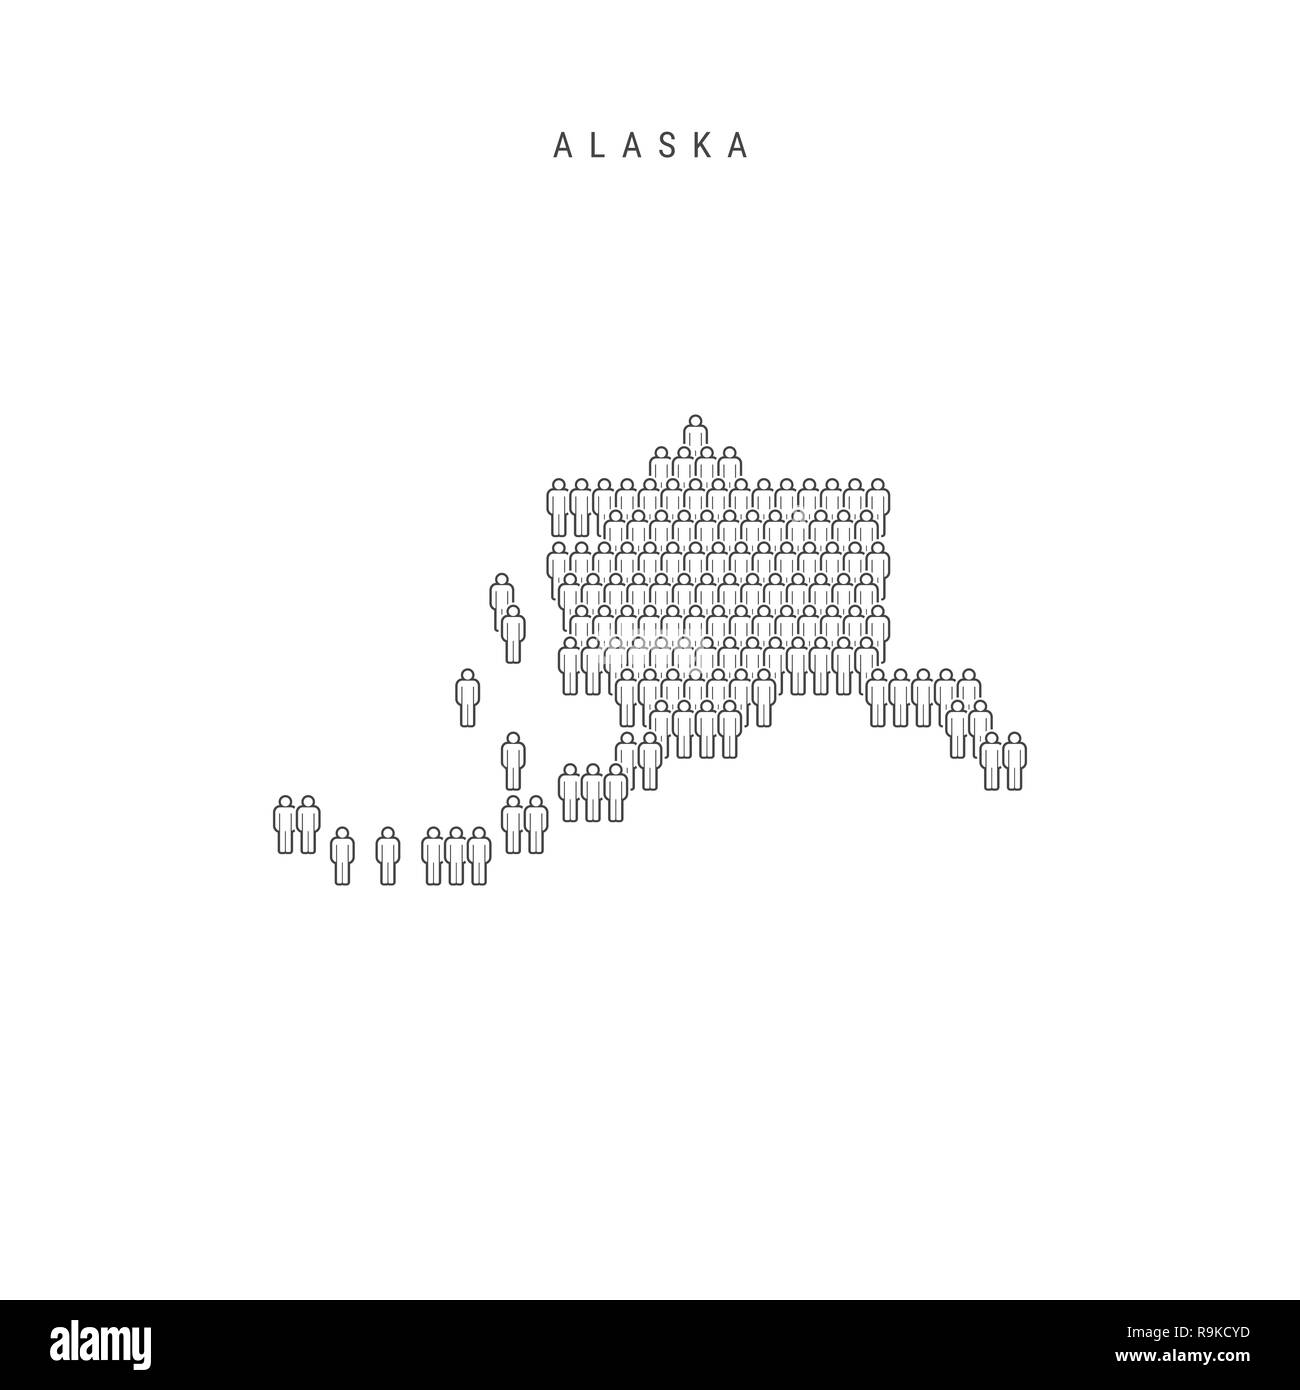 Leute Karte von Alaska, US-Staat. Stilisierte Silhouette, Leute in der Form einer Karte von Alaska. Alaska Bevölkerung. Abbildung isoliert auf weißem B Stockfoto